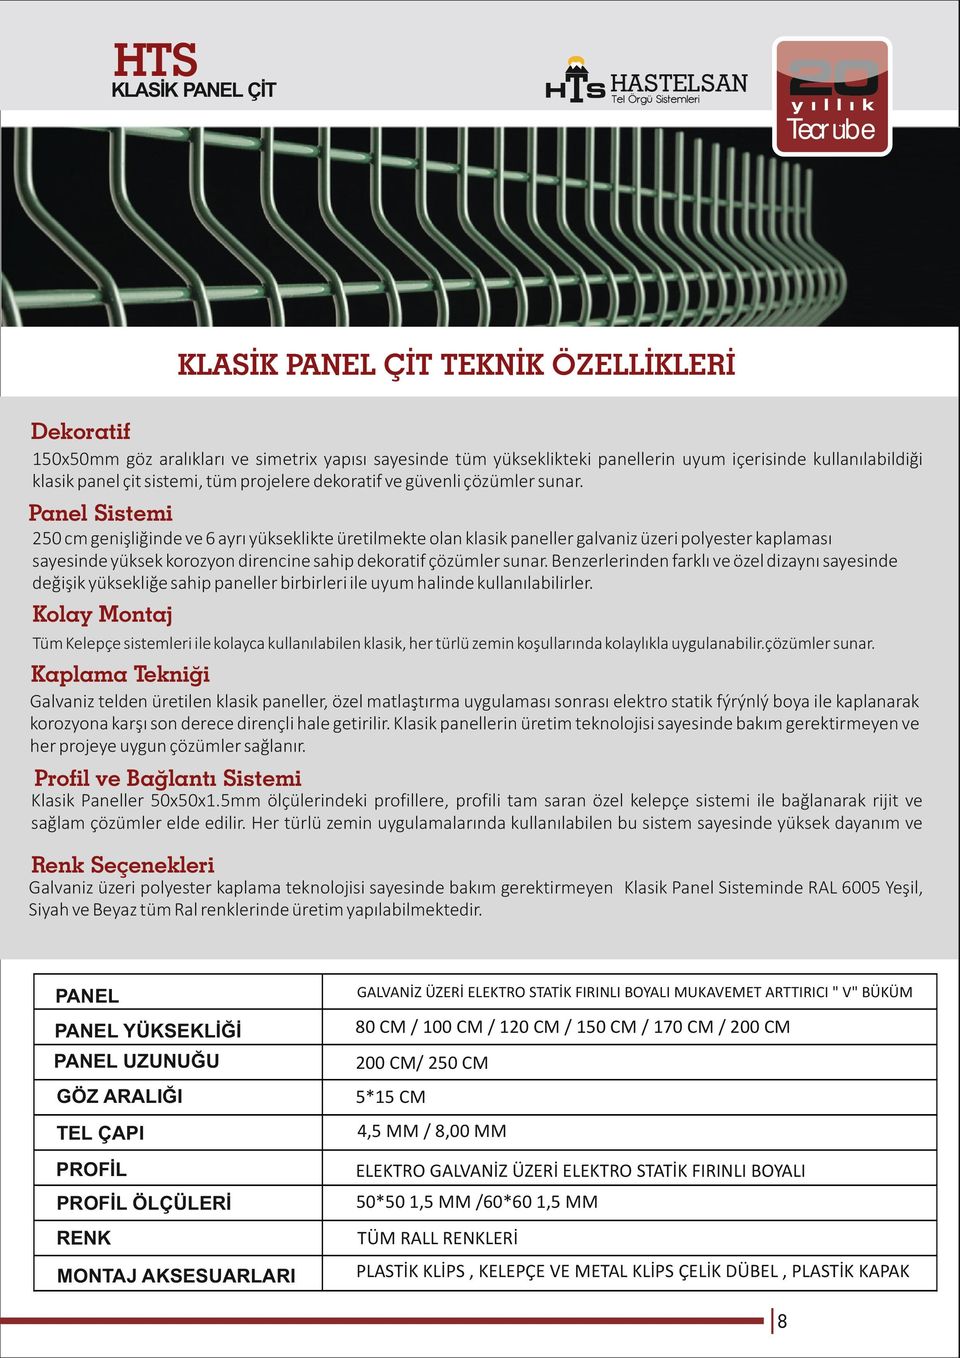 Panel Sistemi 250 cm genişliğinde ve 6 ayrı yükseklikte üretilmekte olan klasik paneller galvaniz üzeri polyester kaplaması sayesinde yüksek korozyon direncine sahip dekoratif çözümler sunar.